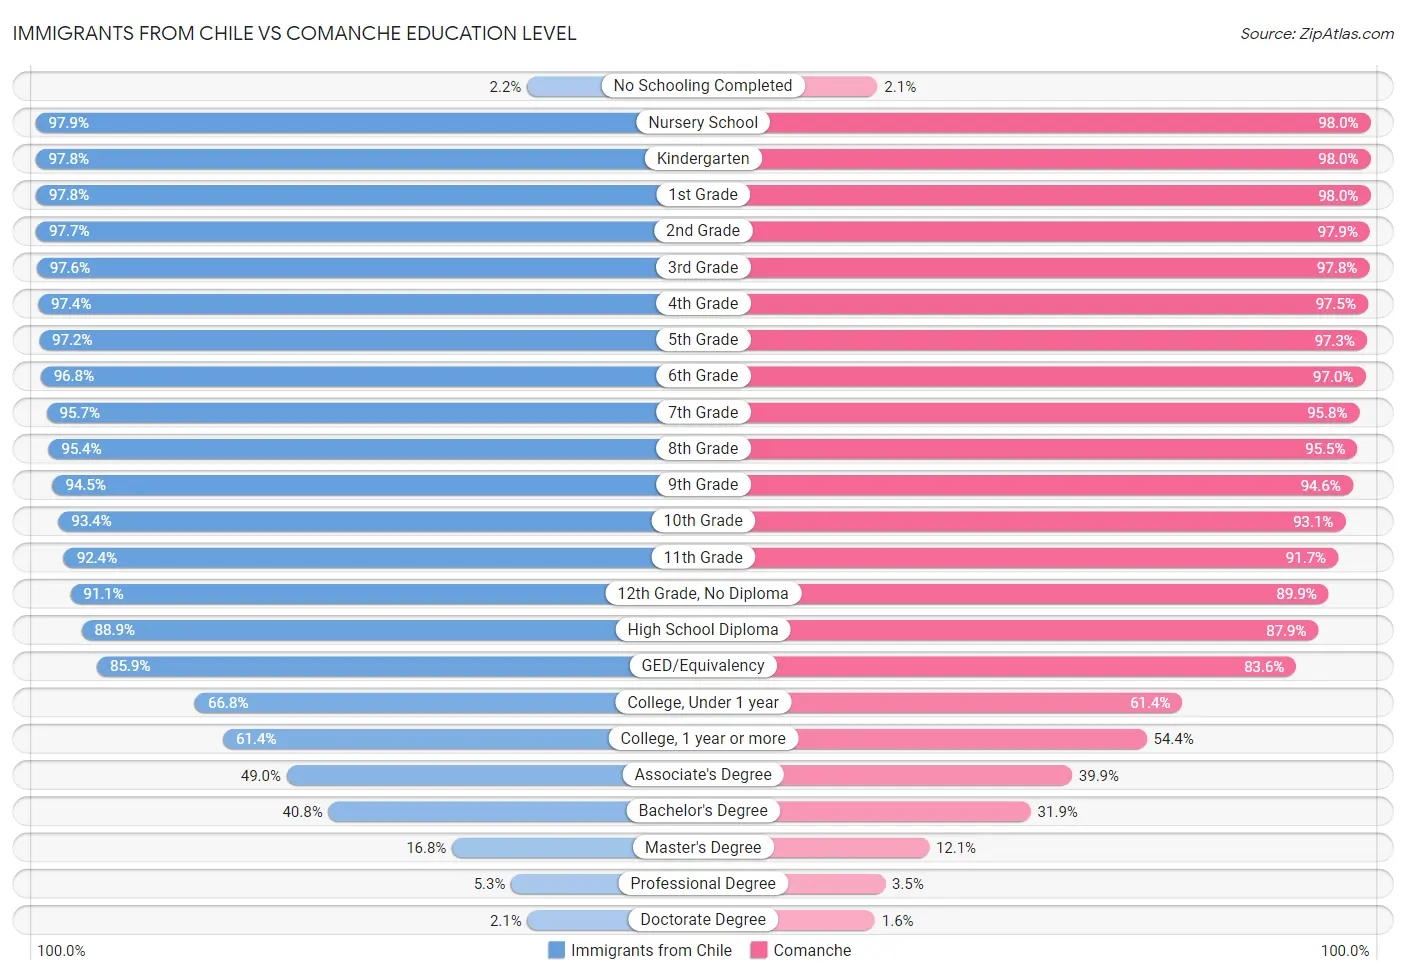 Immigrants from Chile vs Comanche Education Level